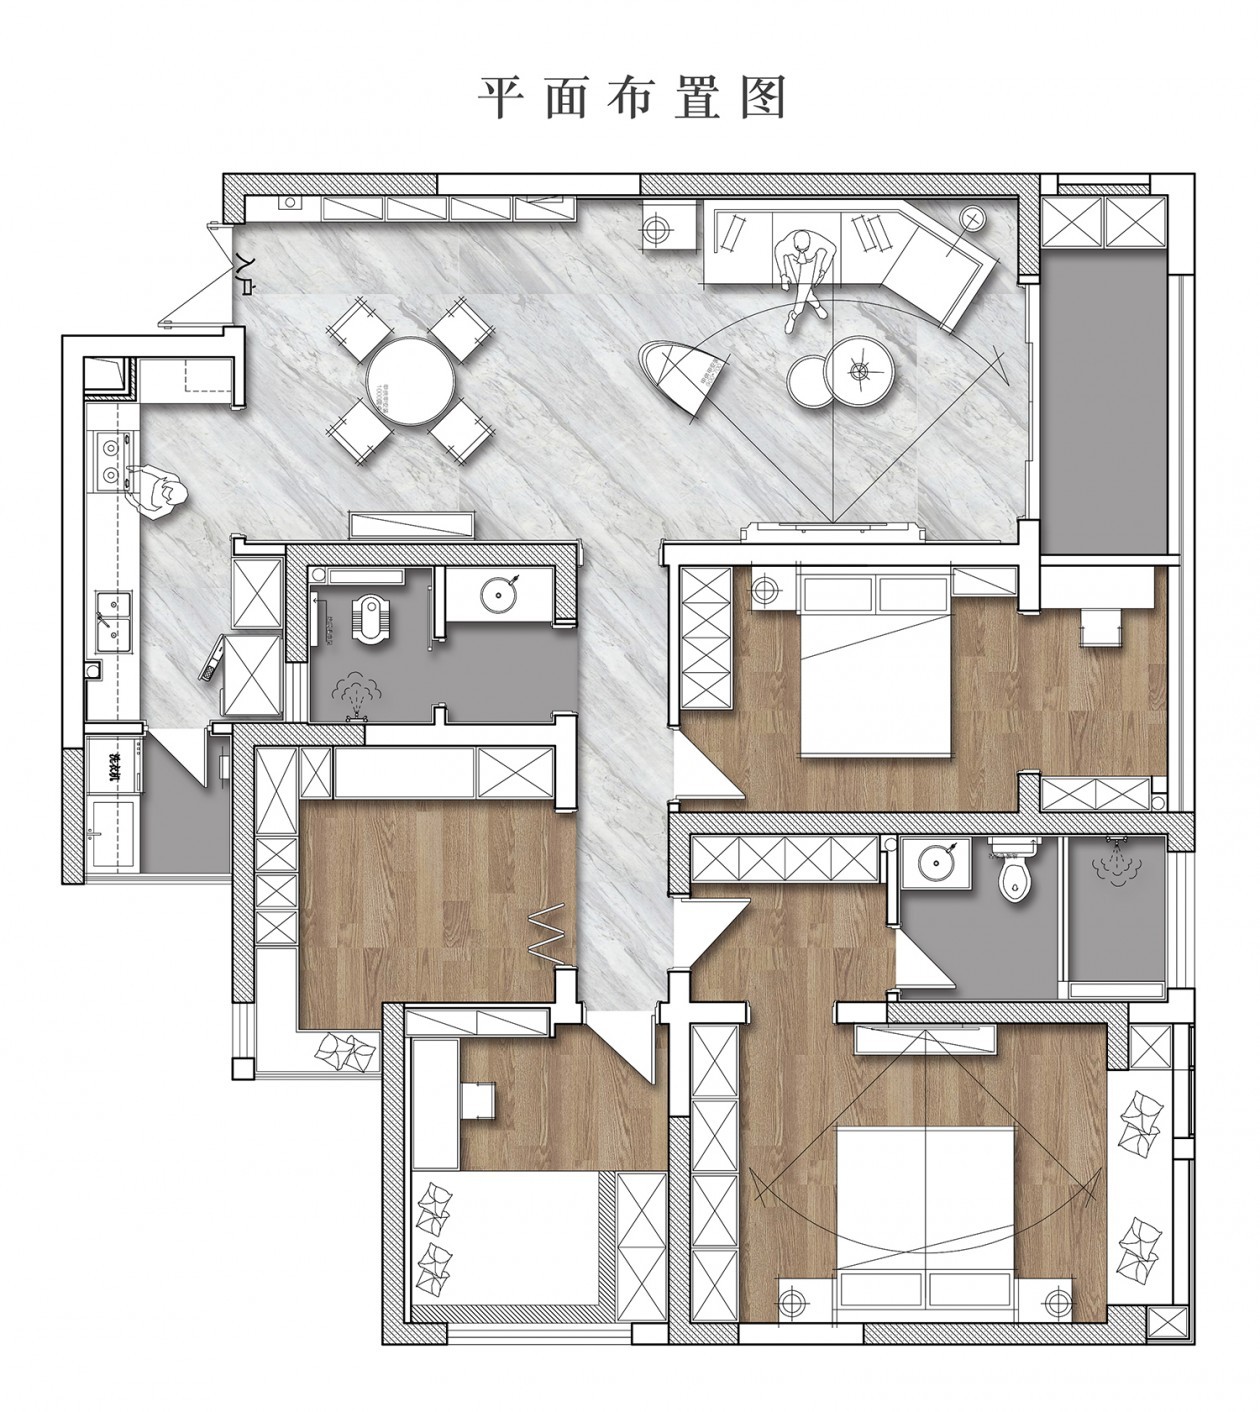 130现代三房装修效果图,烟火气与ga级感的平衡点装修案例效果图-美广网(图1)